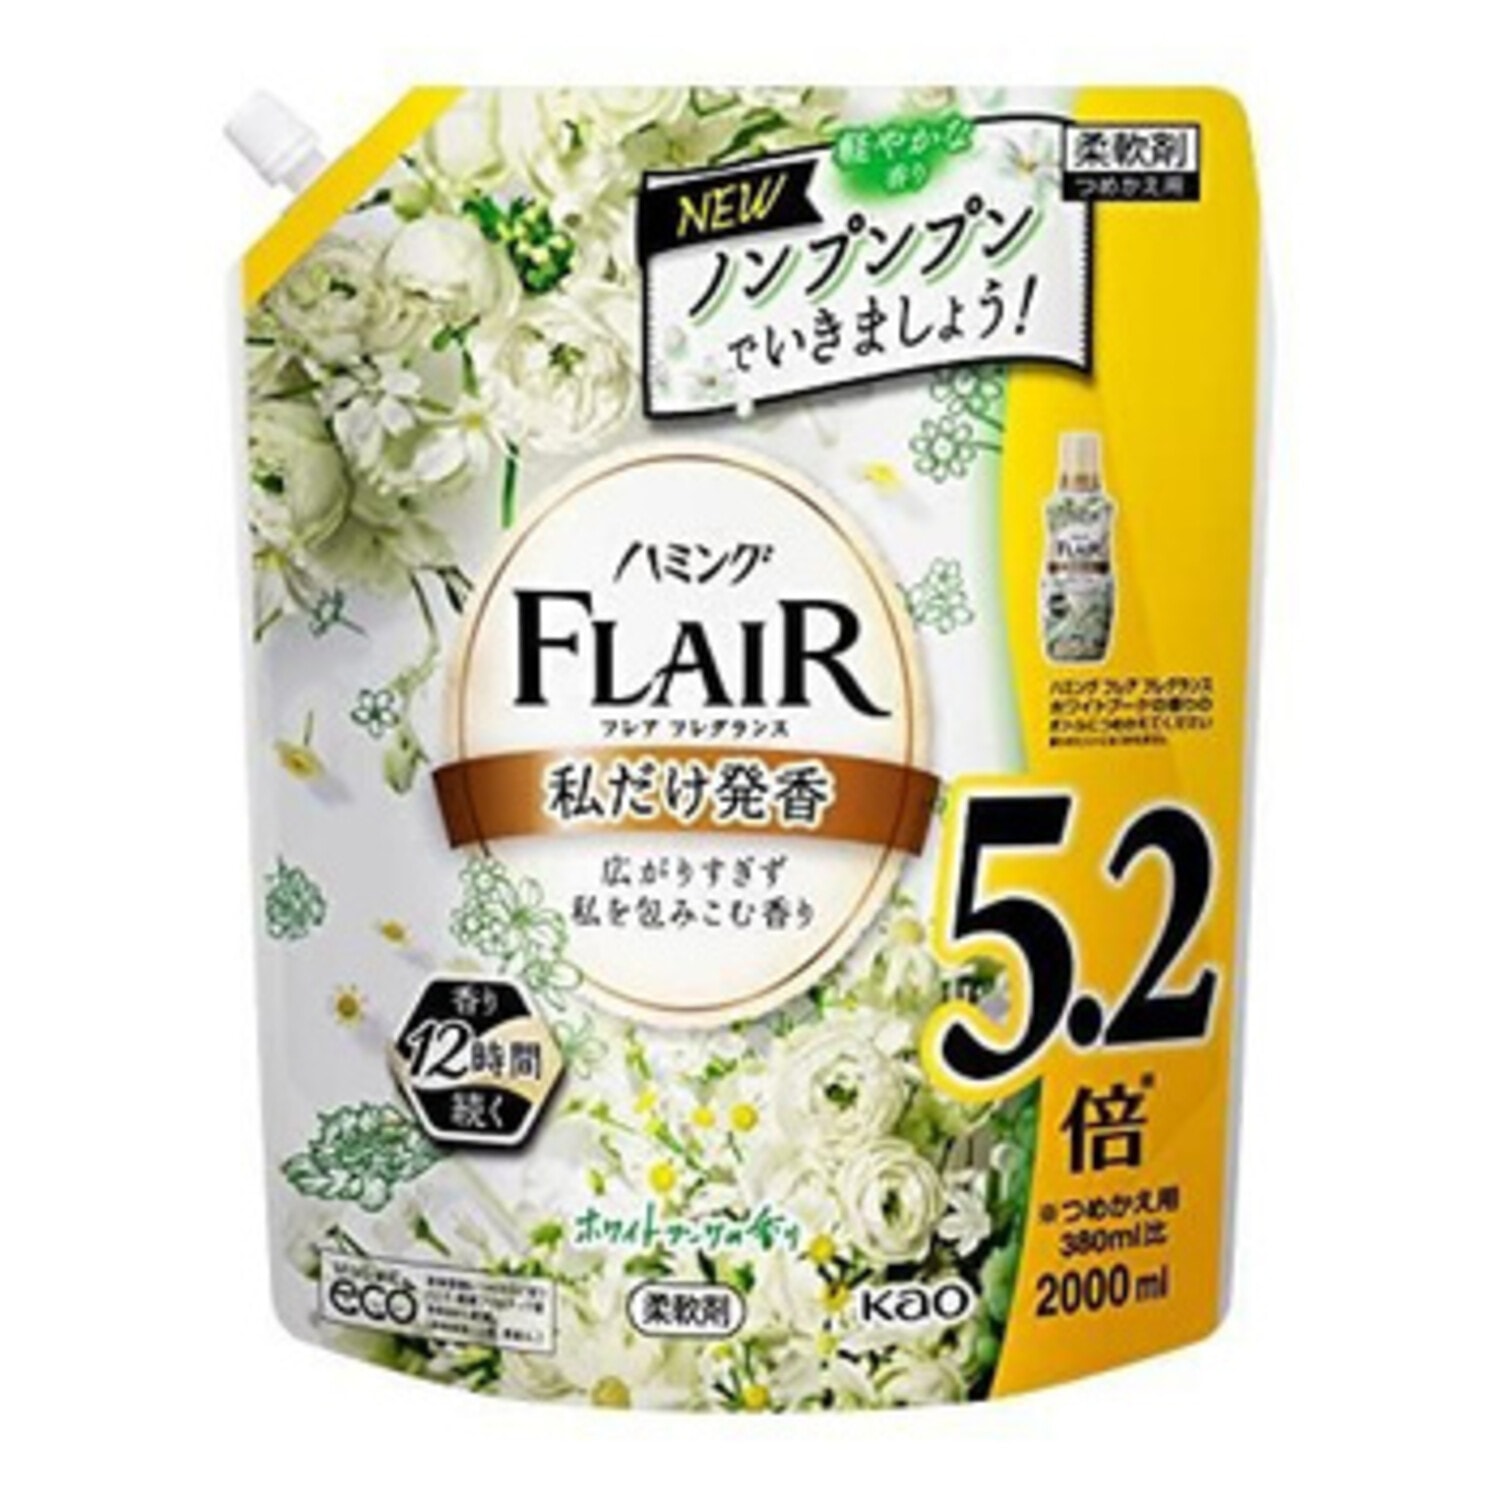 KAO Flair Fragrance White Bouquet, Кондиционер-смягчитель для белья , с изящным ароматом белых цветов, 2000 мл. / 407498